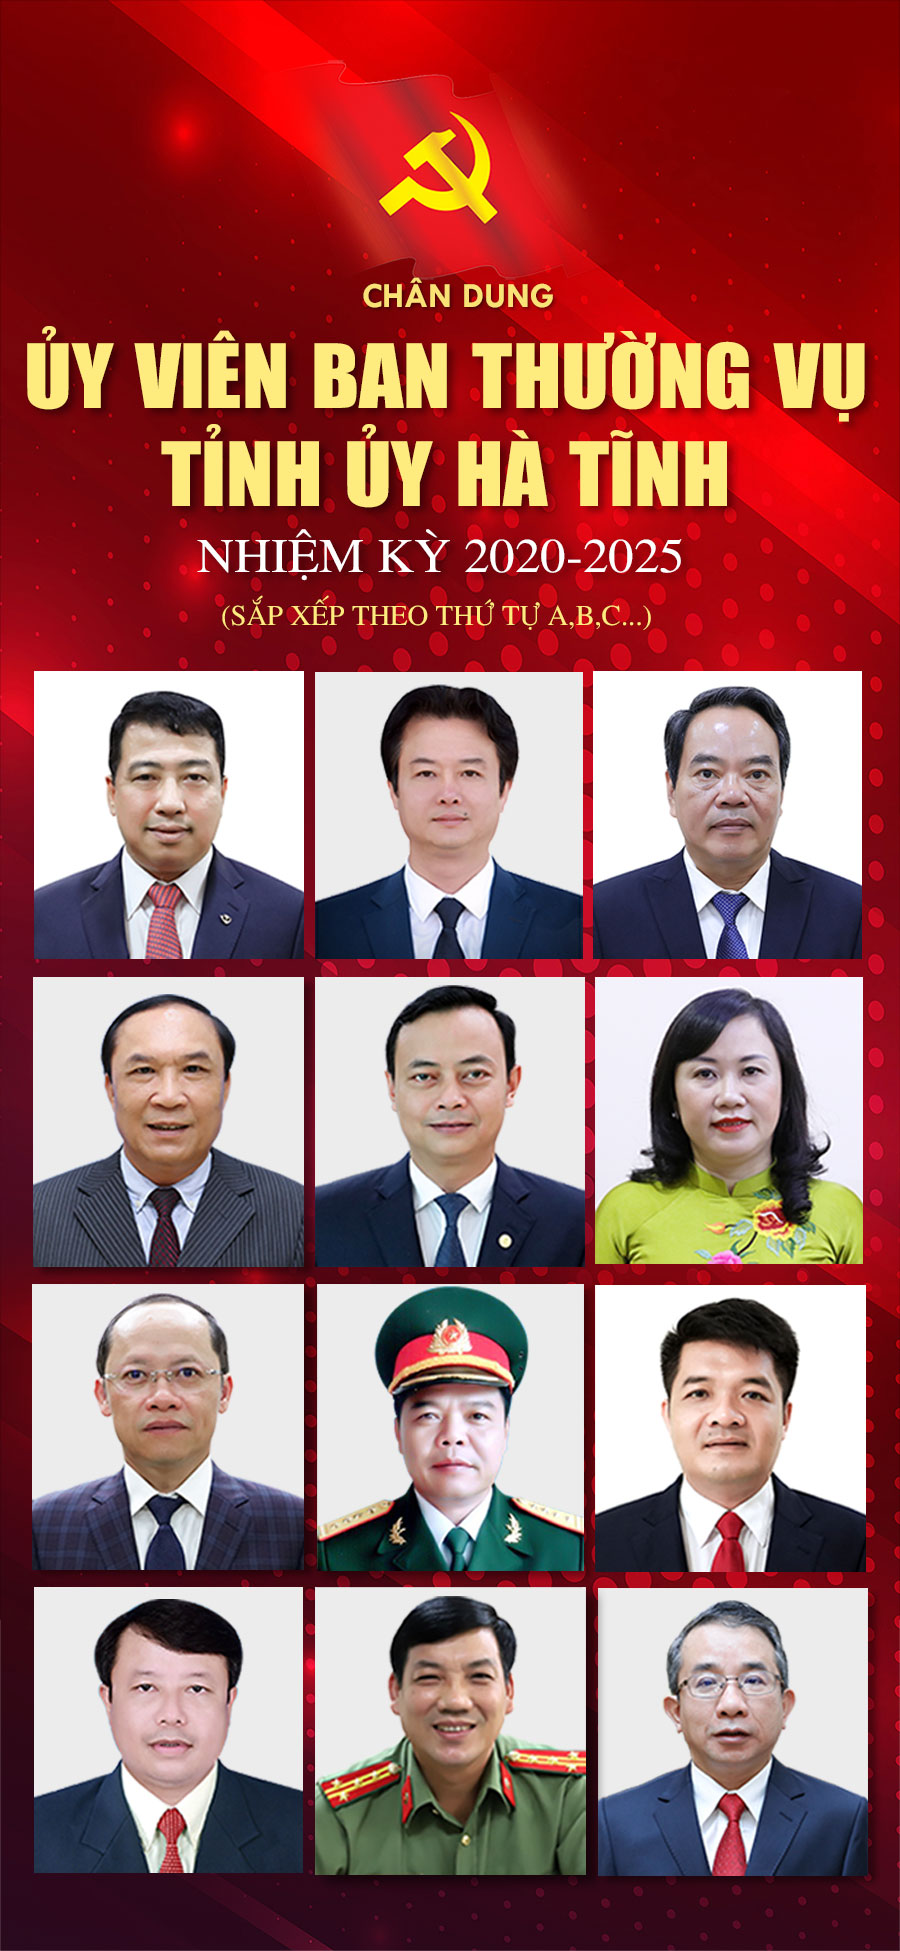 Chân dung các Ủy viên Ban Thường vụ Tỉnh ủy Hà Tĩnh nhiệm kỳ 2020-2025